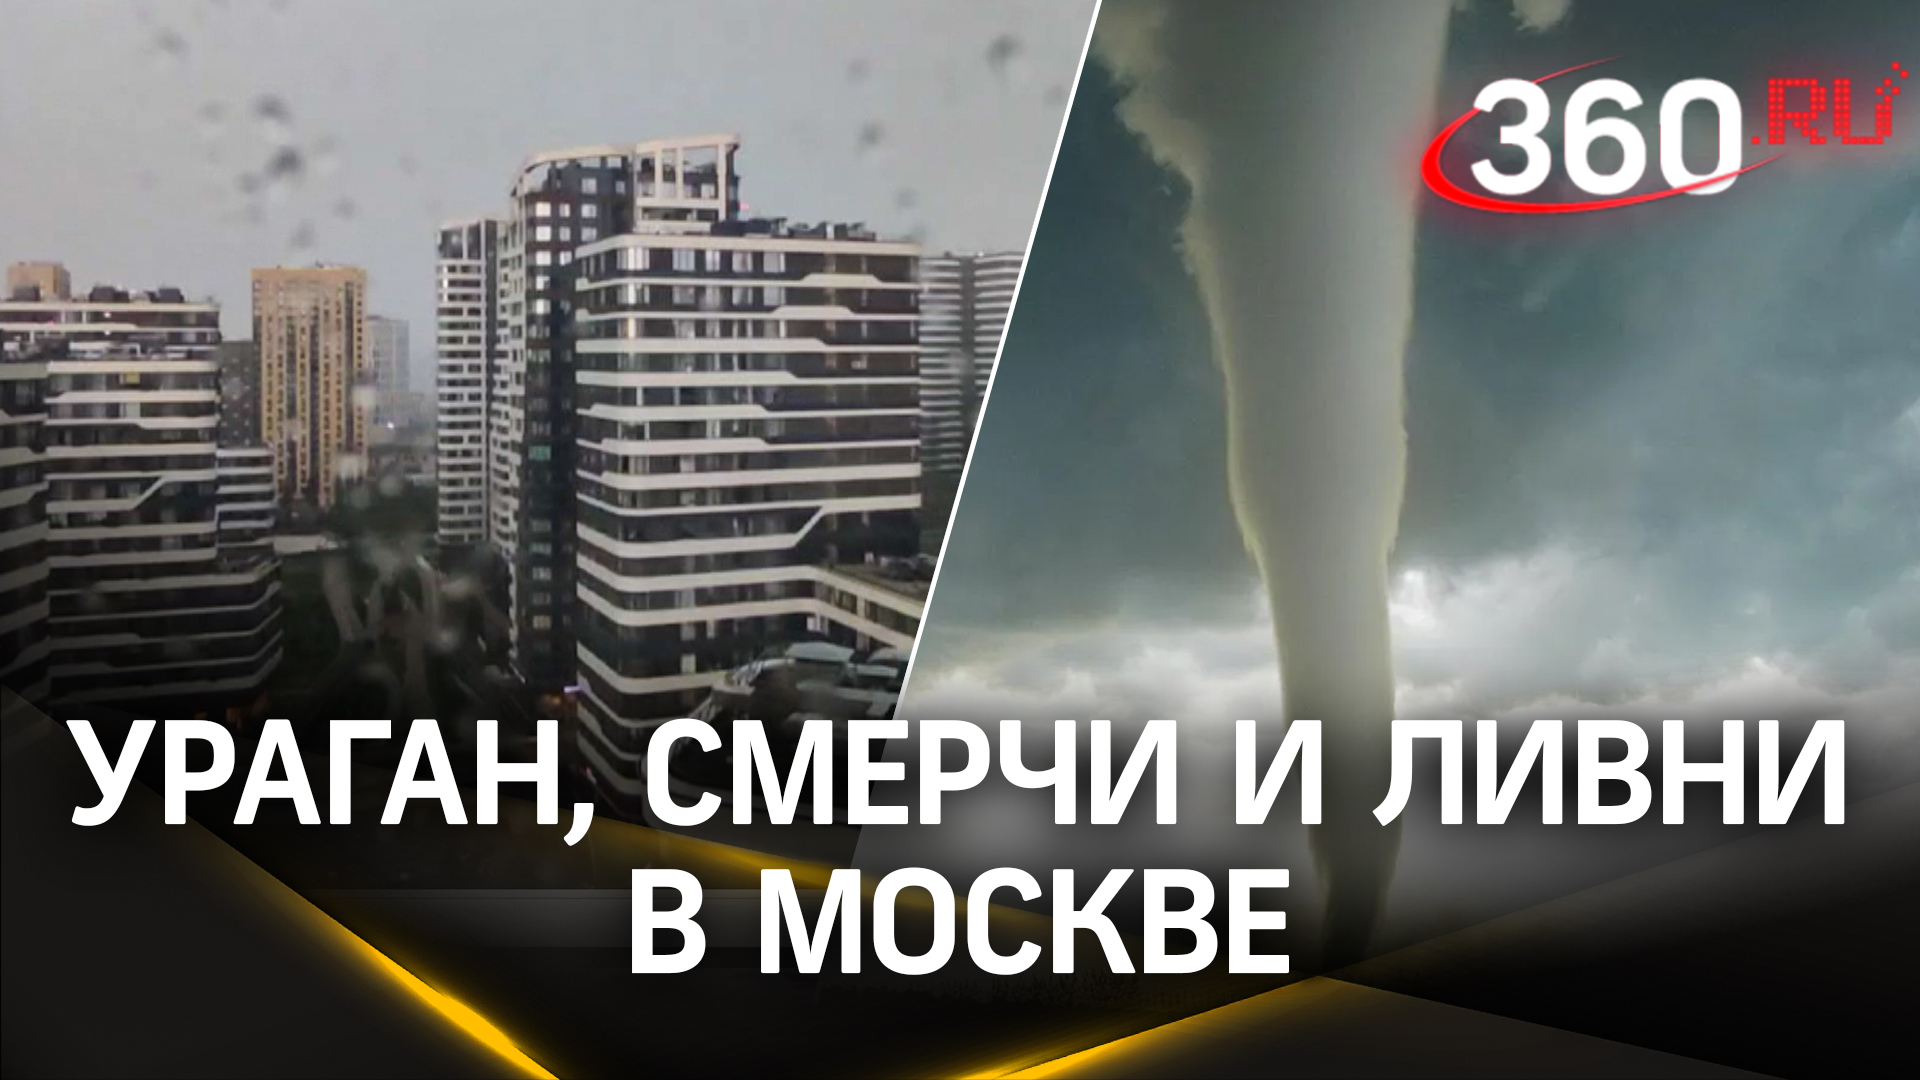 Сдувало москвичей, деревья, туалеты: ураган, смерчи и ливни в Москве и области